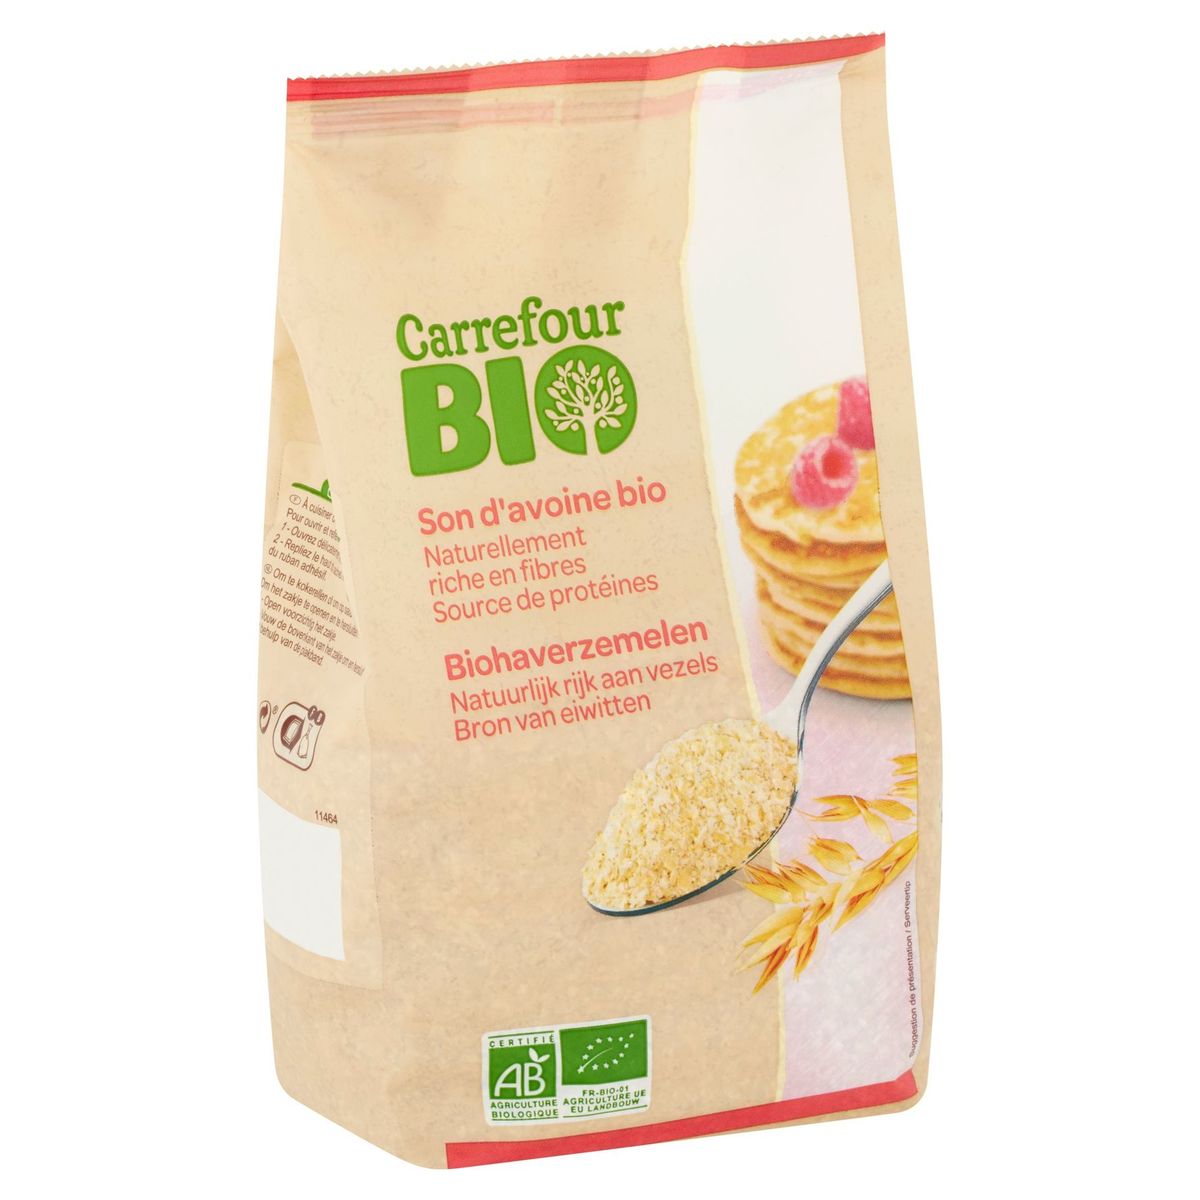 Carrefour Bio Son d'Avoine Bio 500 g